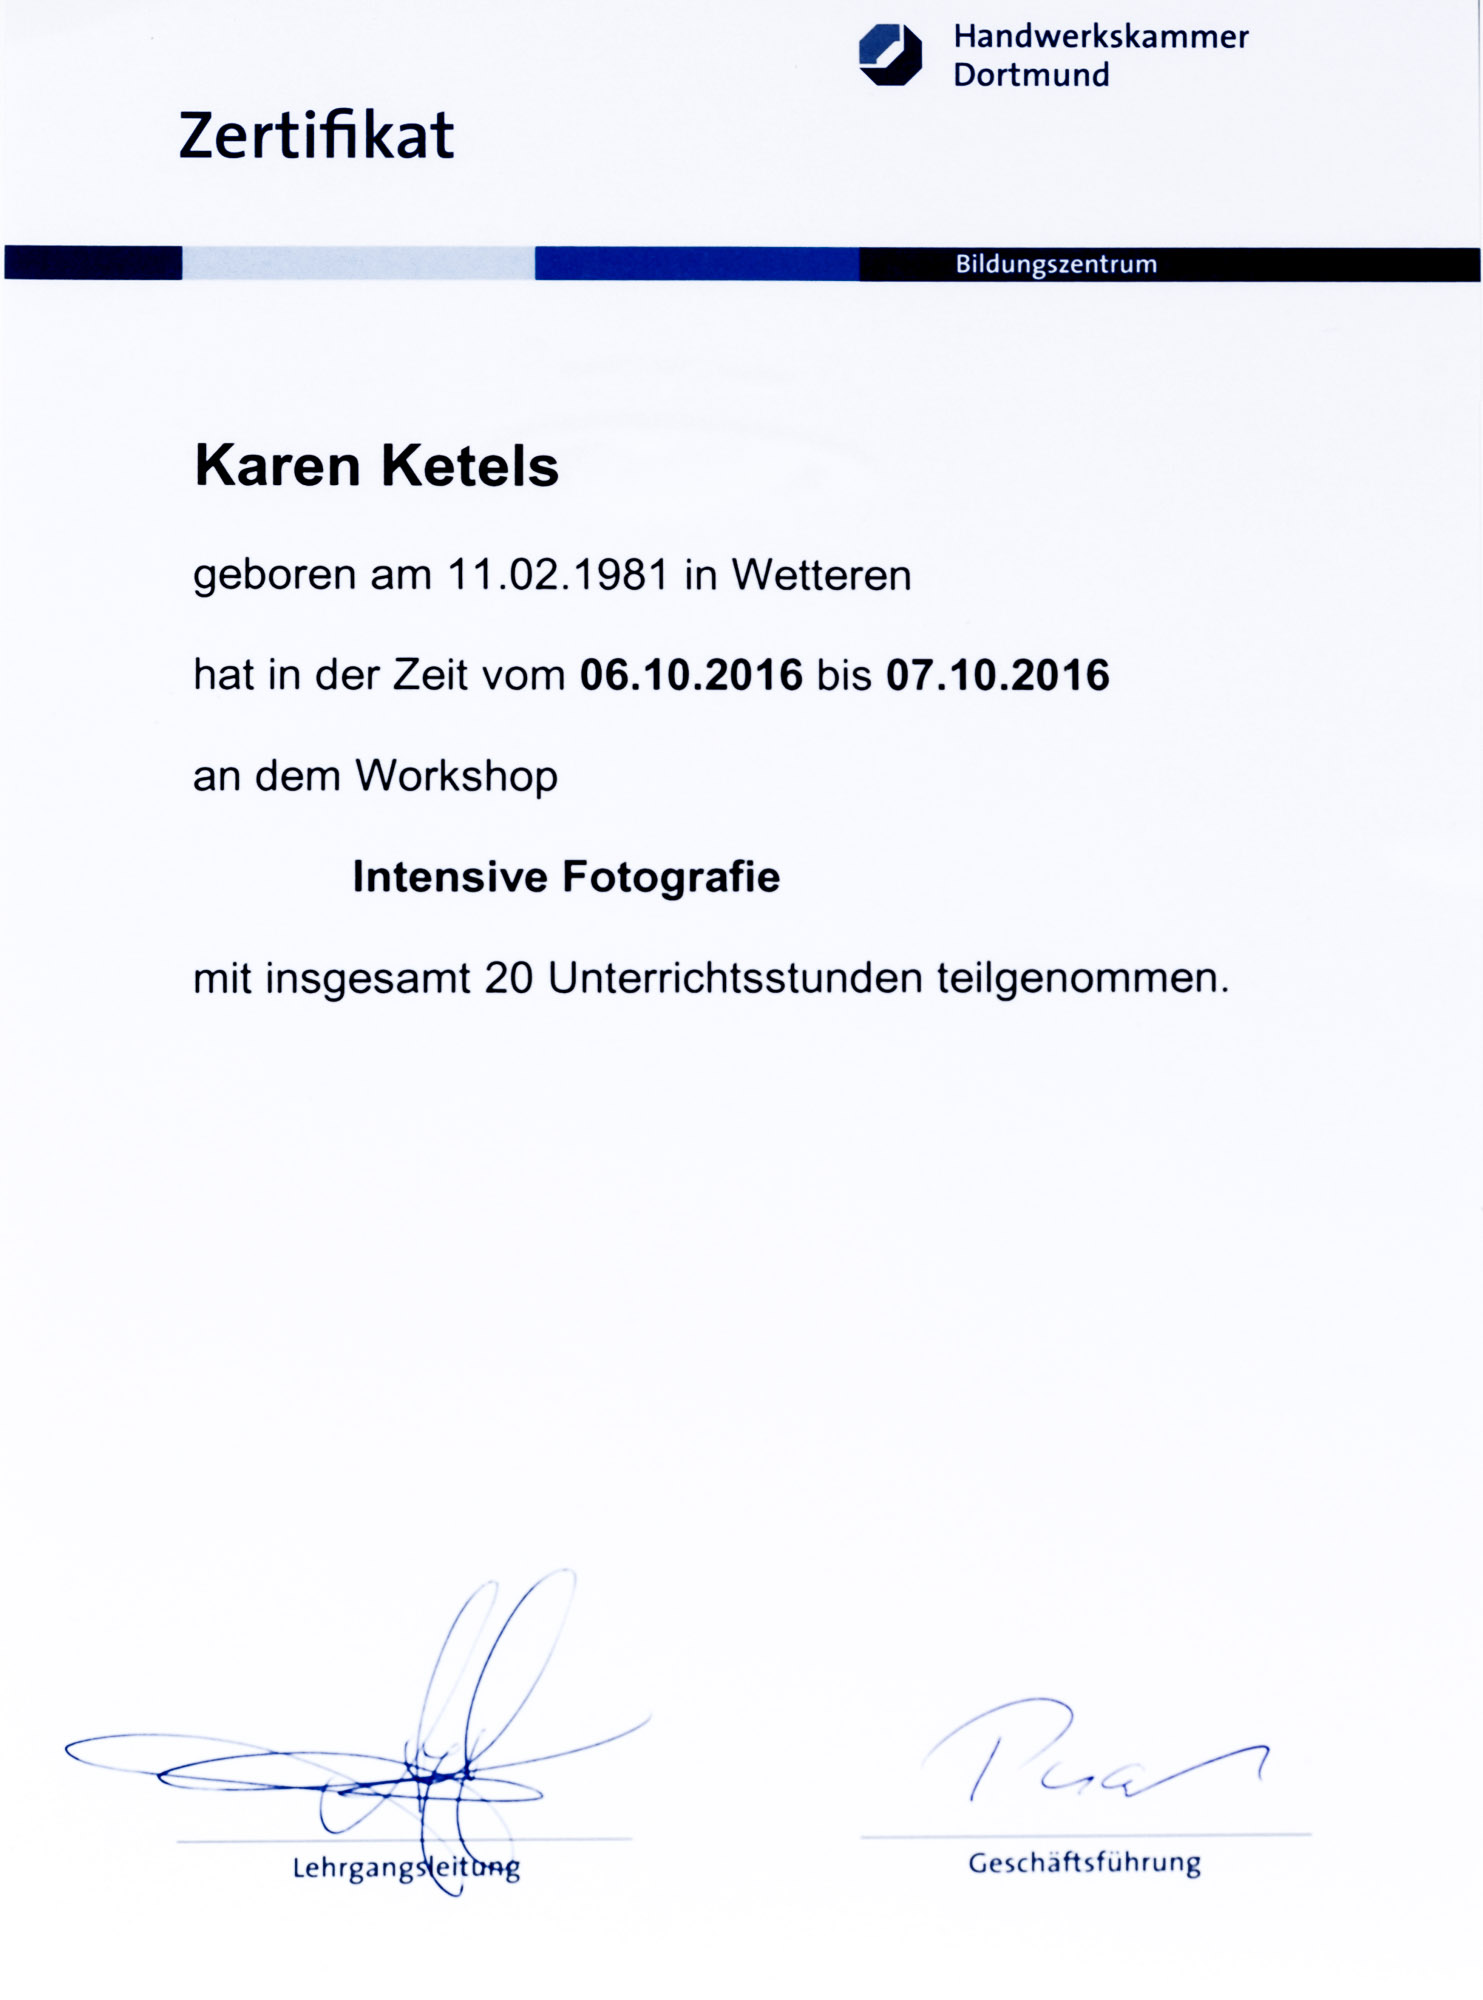 Karen Ketels zertifikat masterclass Andy Hens, Handwerkskammer Dortmund 2016